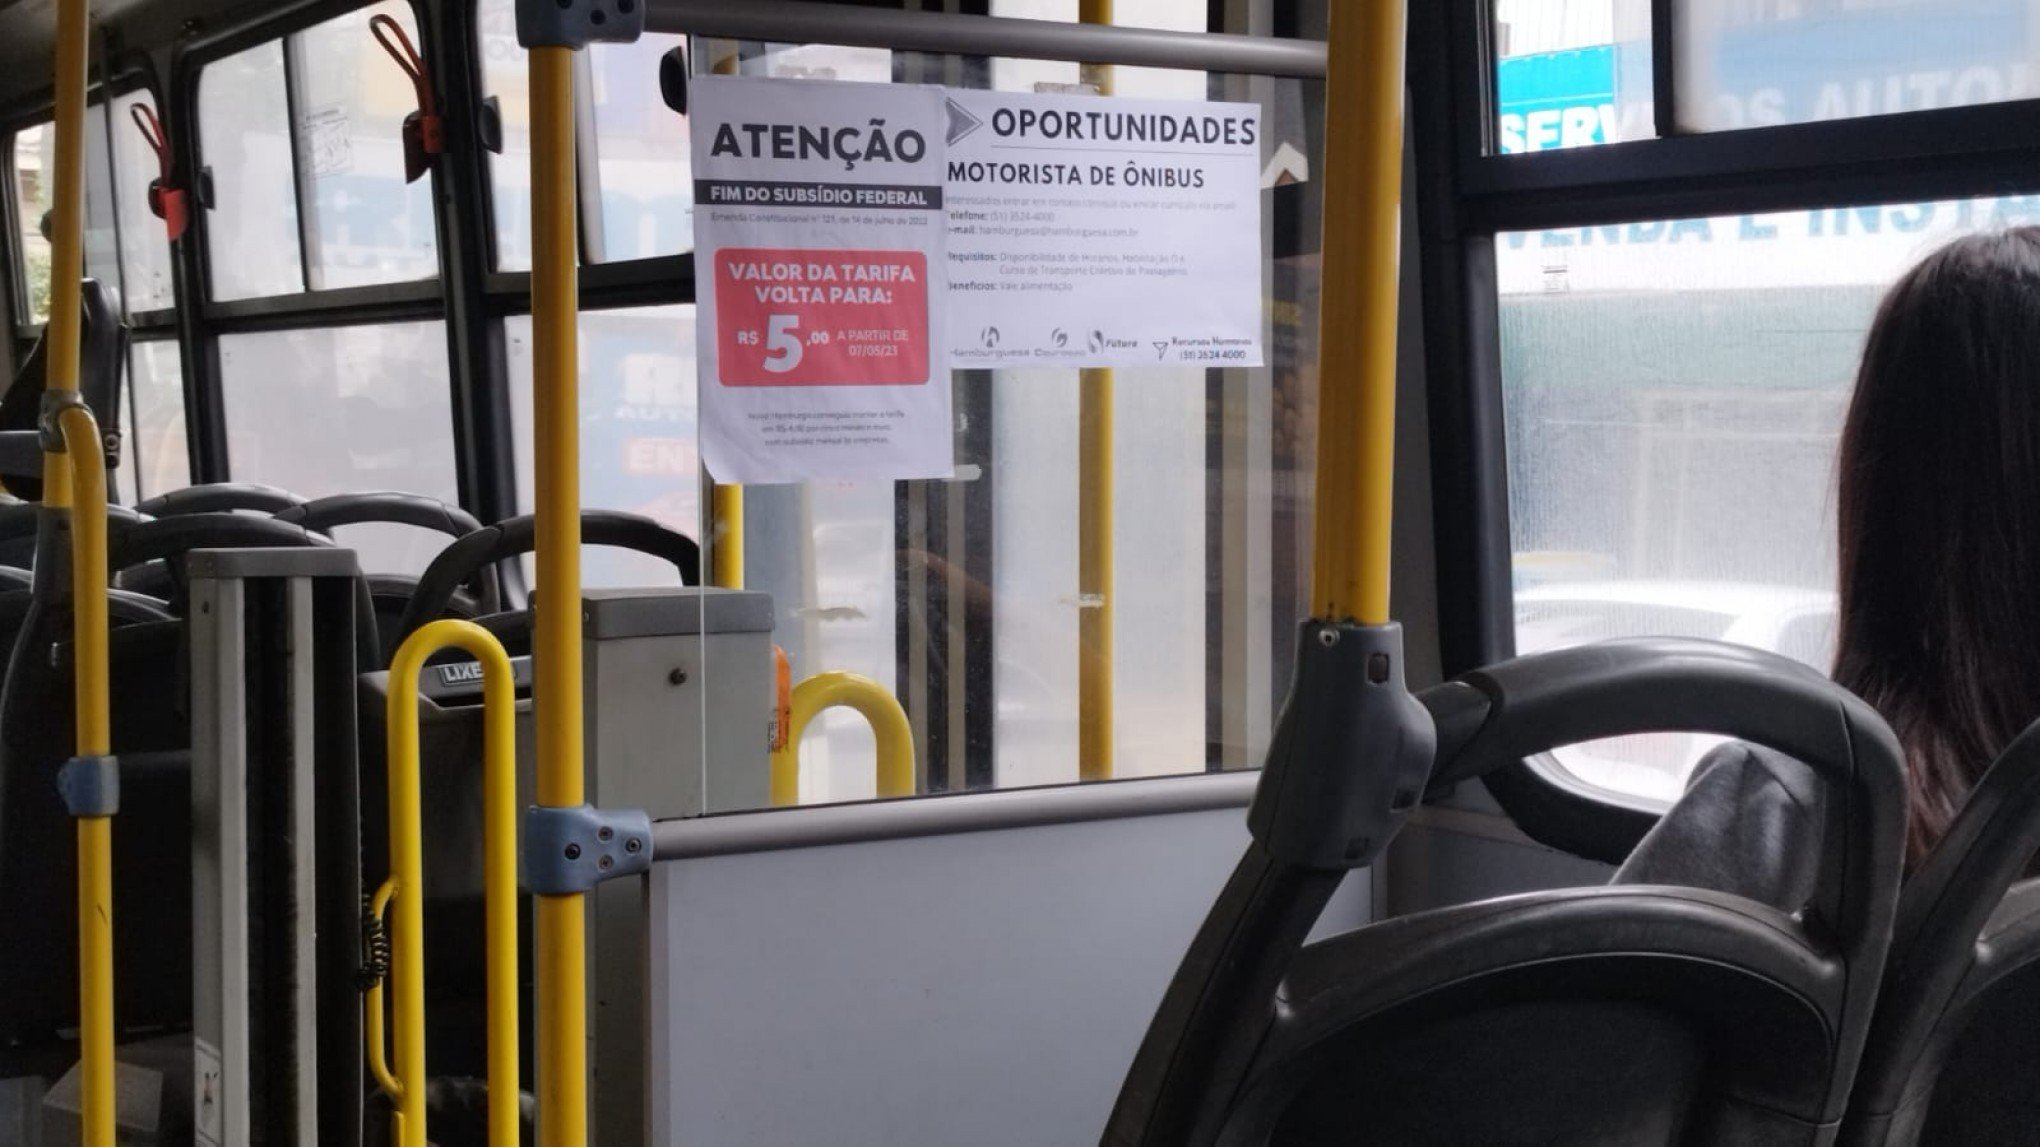 Passagem de ônibus voltará a custar R$ 5 em Novo Hamburgo